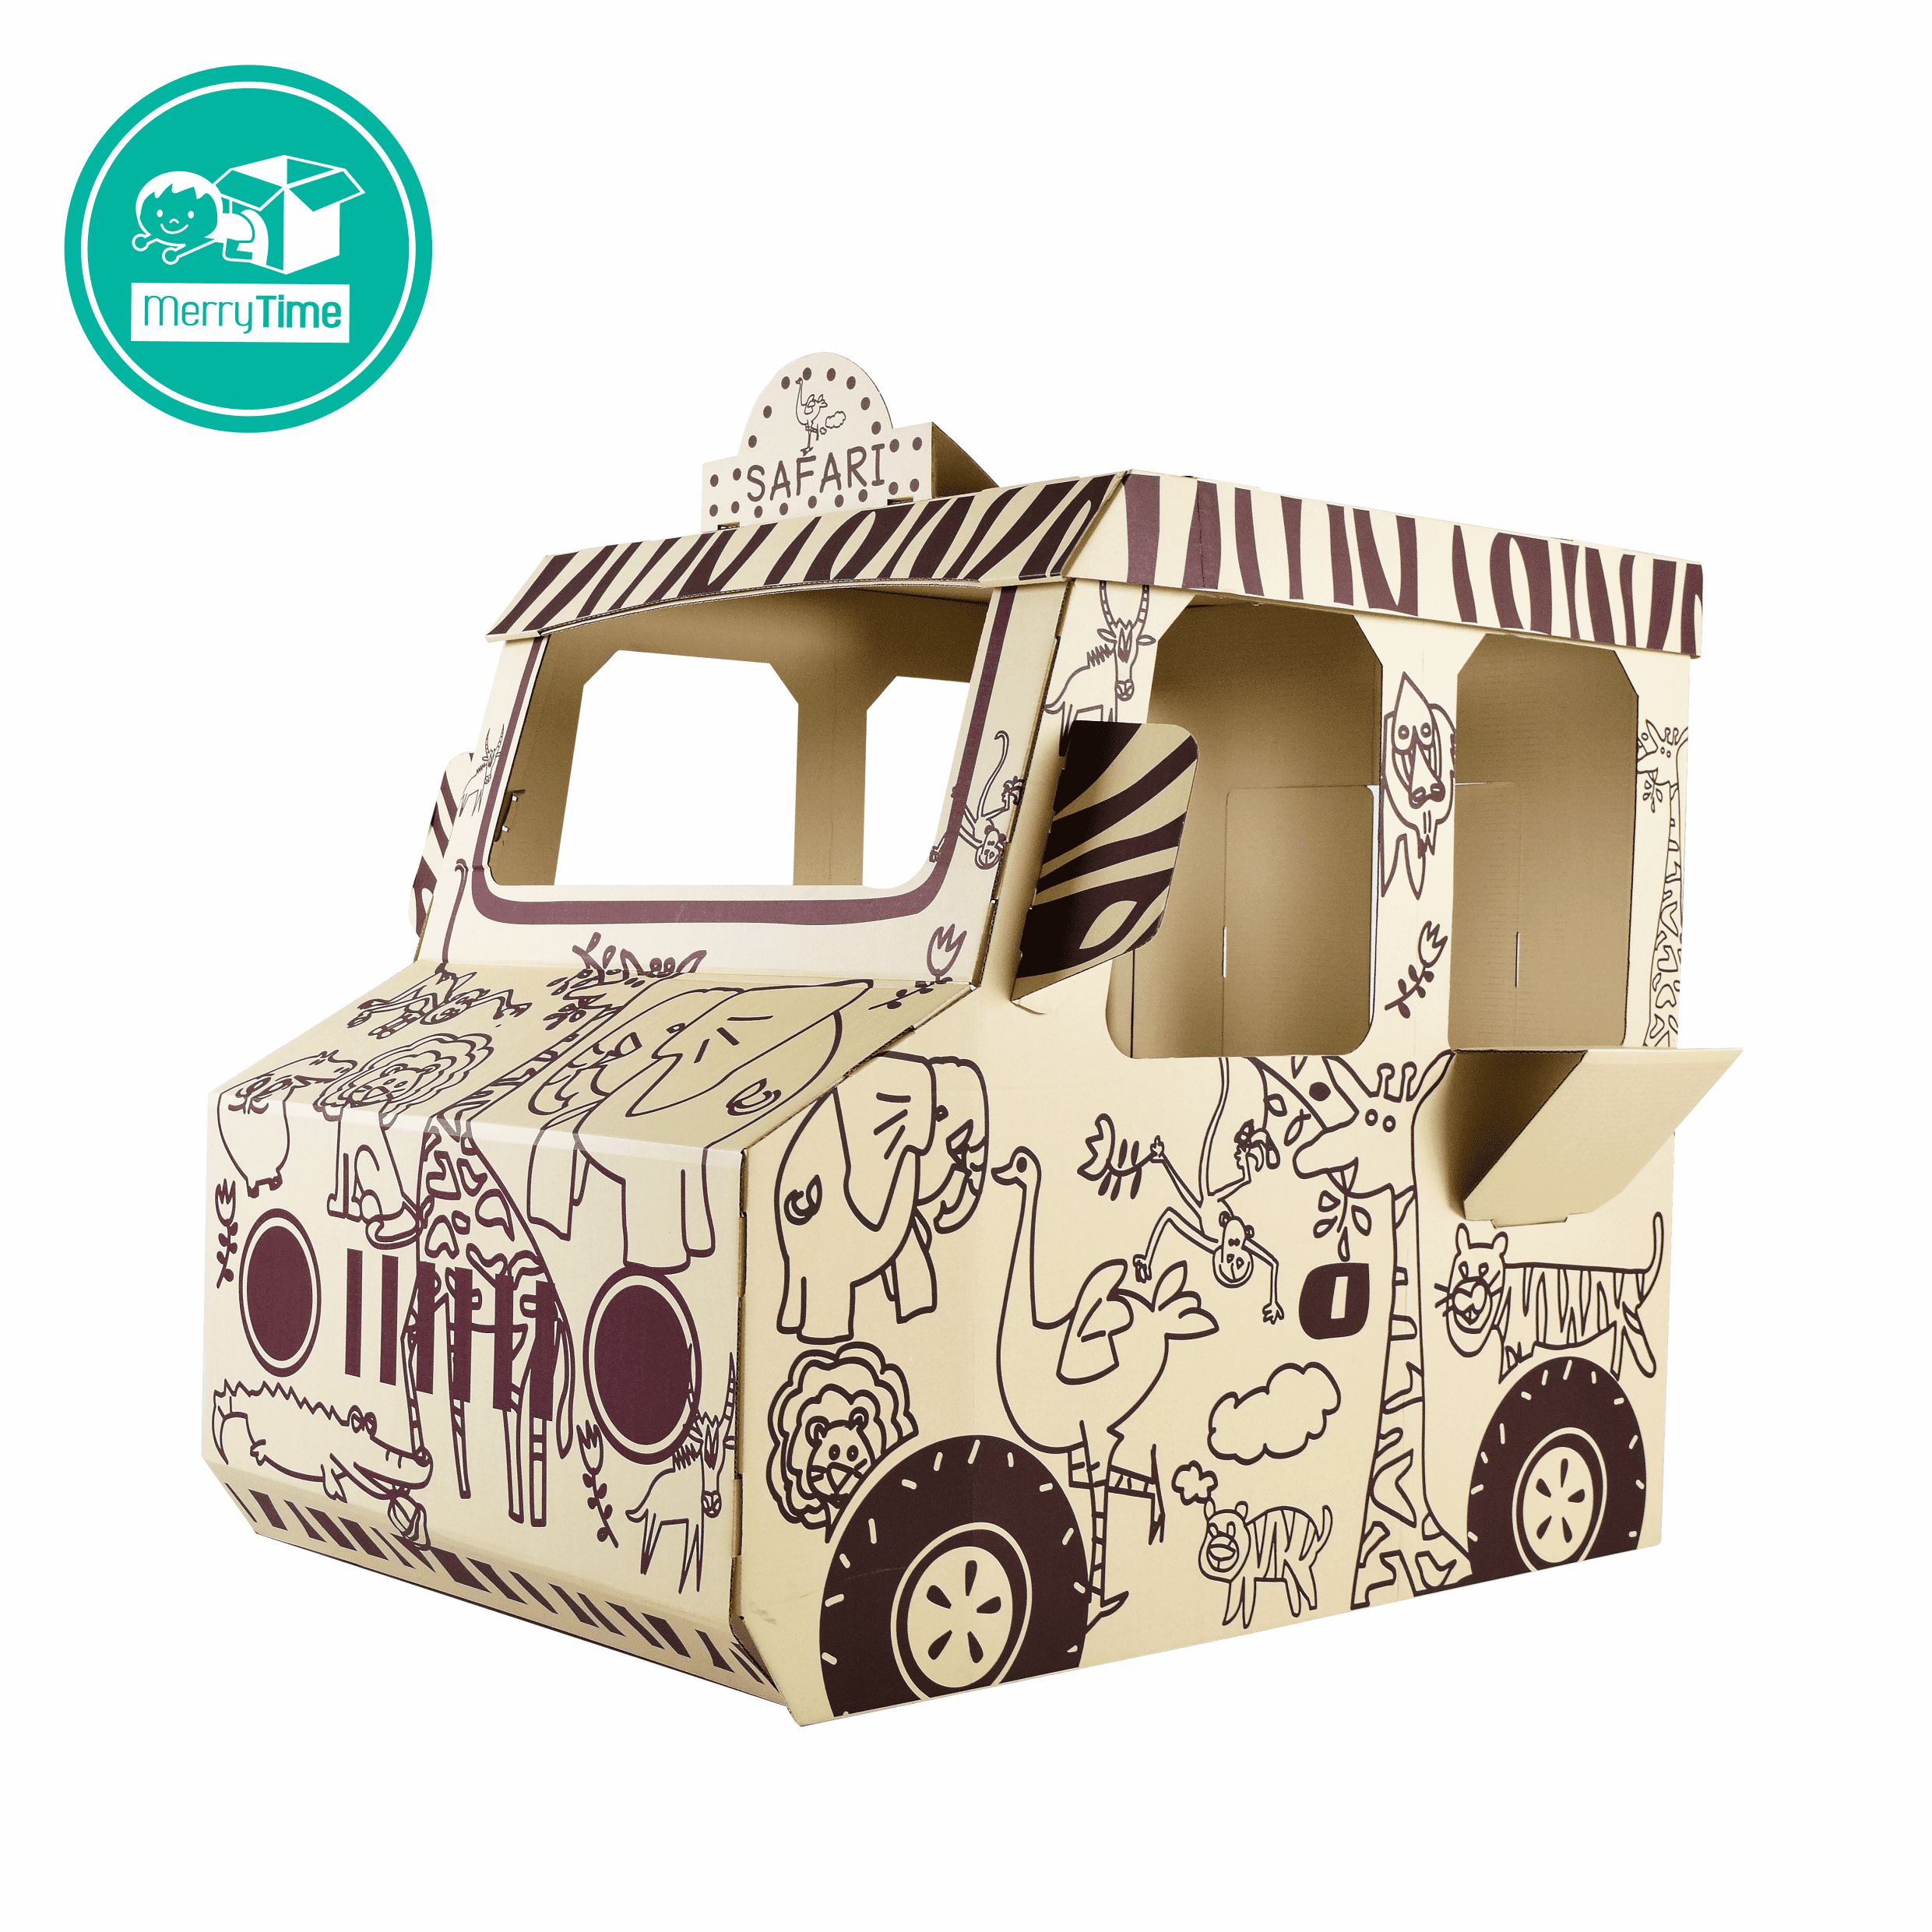 รถกระดาษลายซาฟารี (Merry Car - Safari) - Cardboard Truck Playhouse